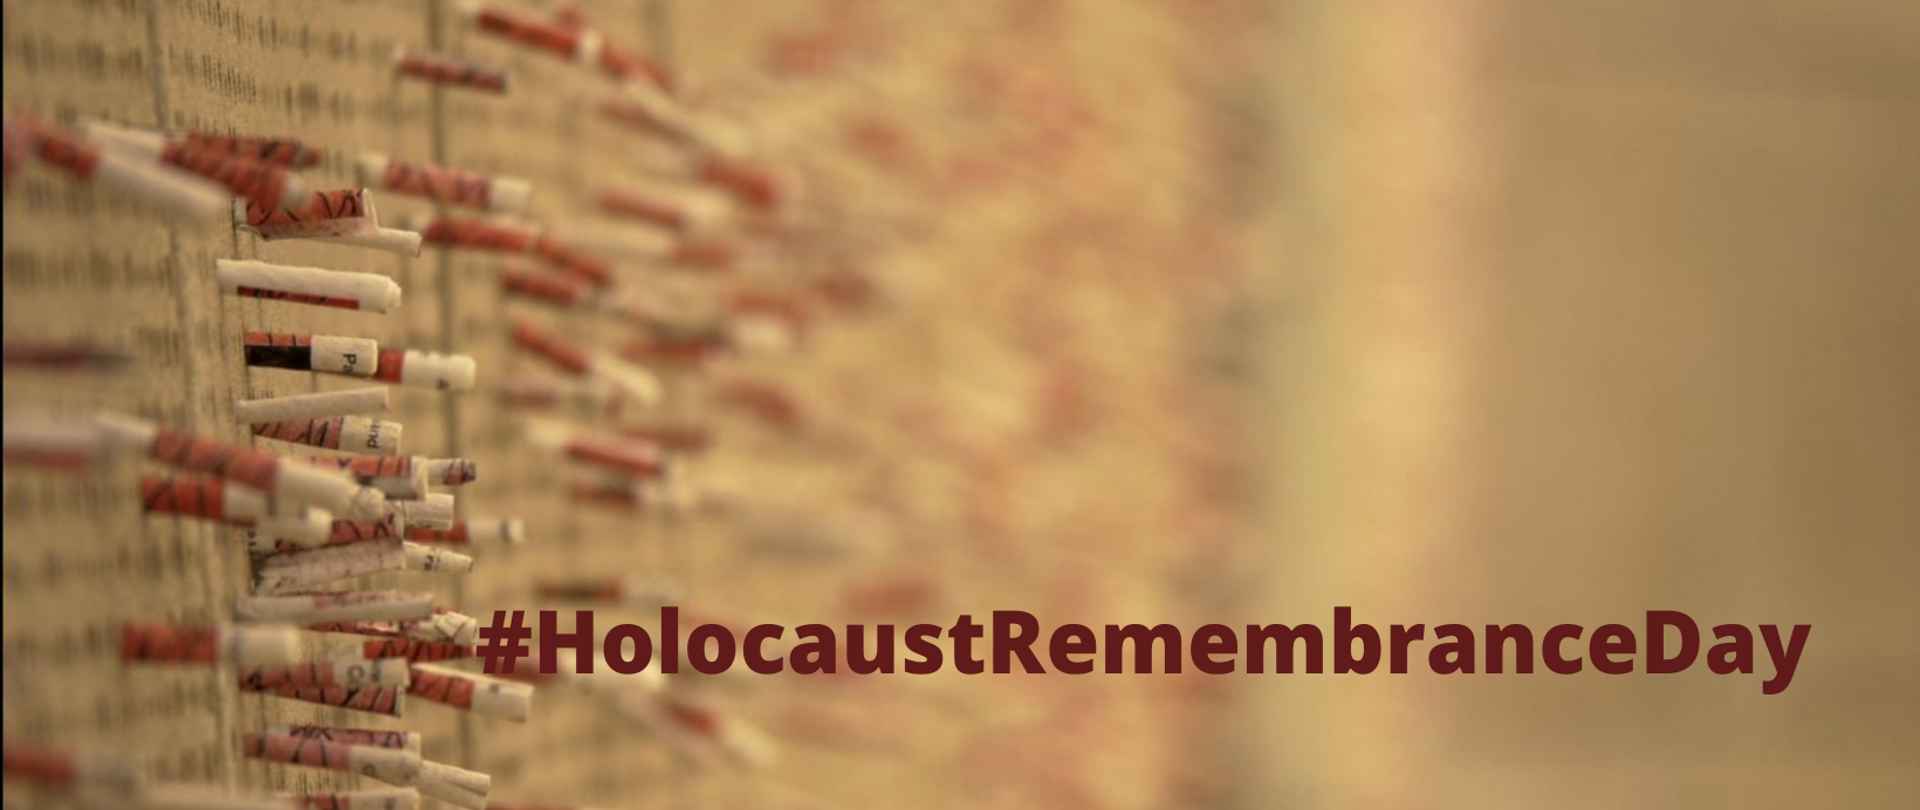 Kadr z filmu - zbliżenie na wystające ze ściany modlitwy, prośby i życzenia zapisane na małych karteczkach w jednym z pomieszczeń Holocaust Museum LA 